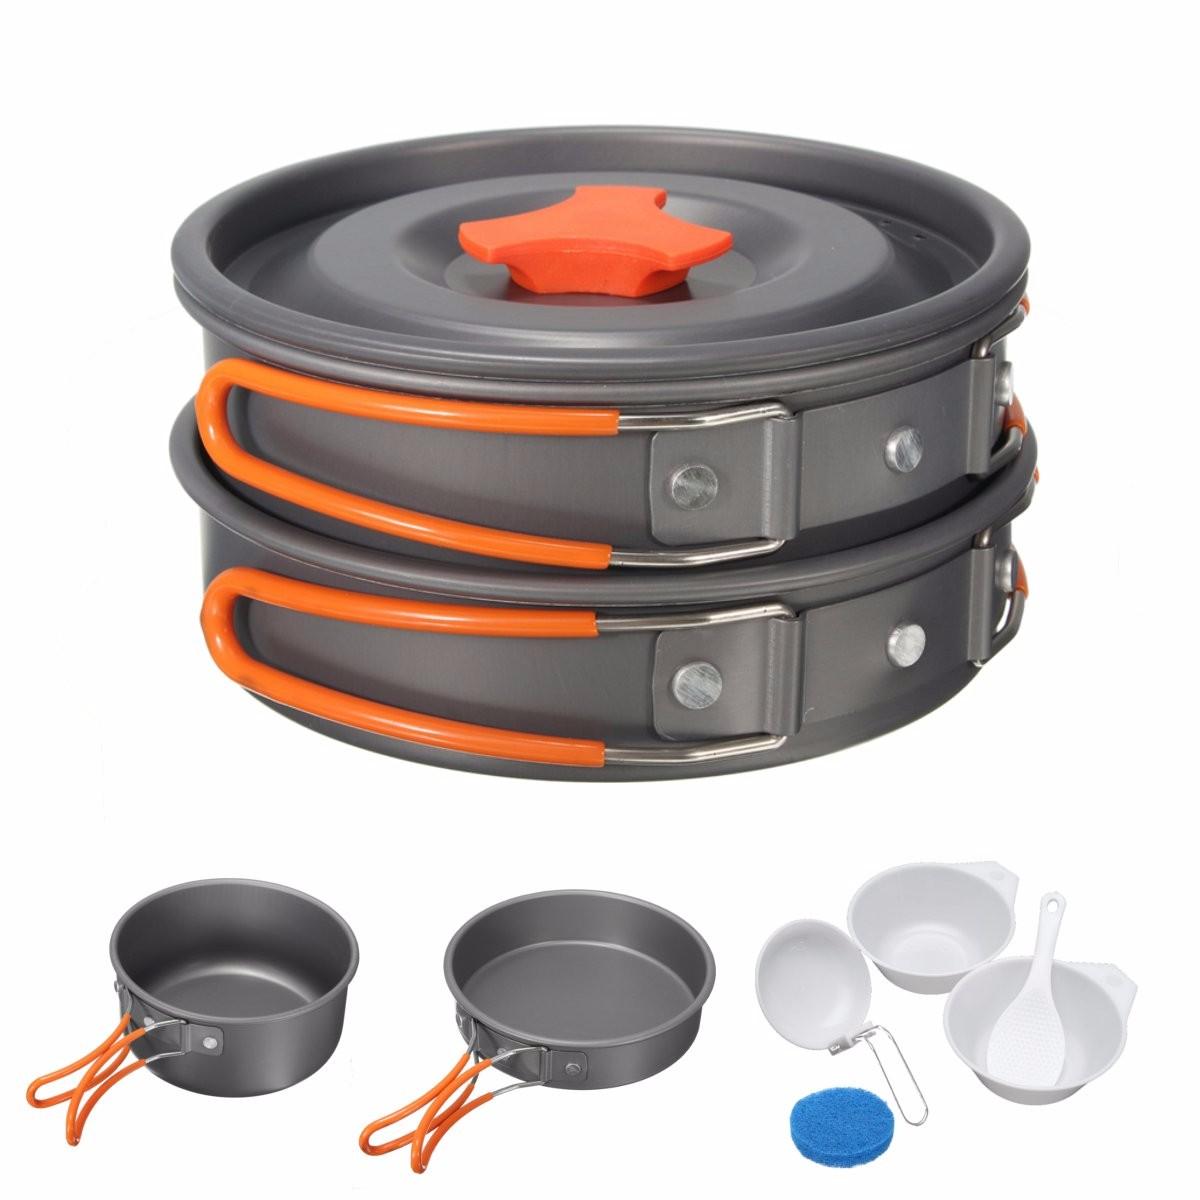 Ensemble de 8 casseroles et bols de camping en aluminium, portable pour cuisiner lors de pique-niques en plein air.